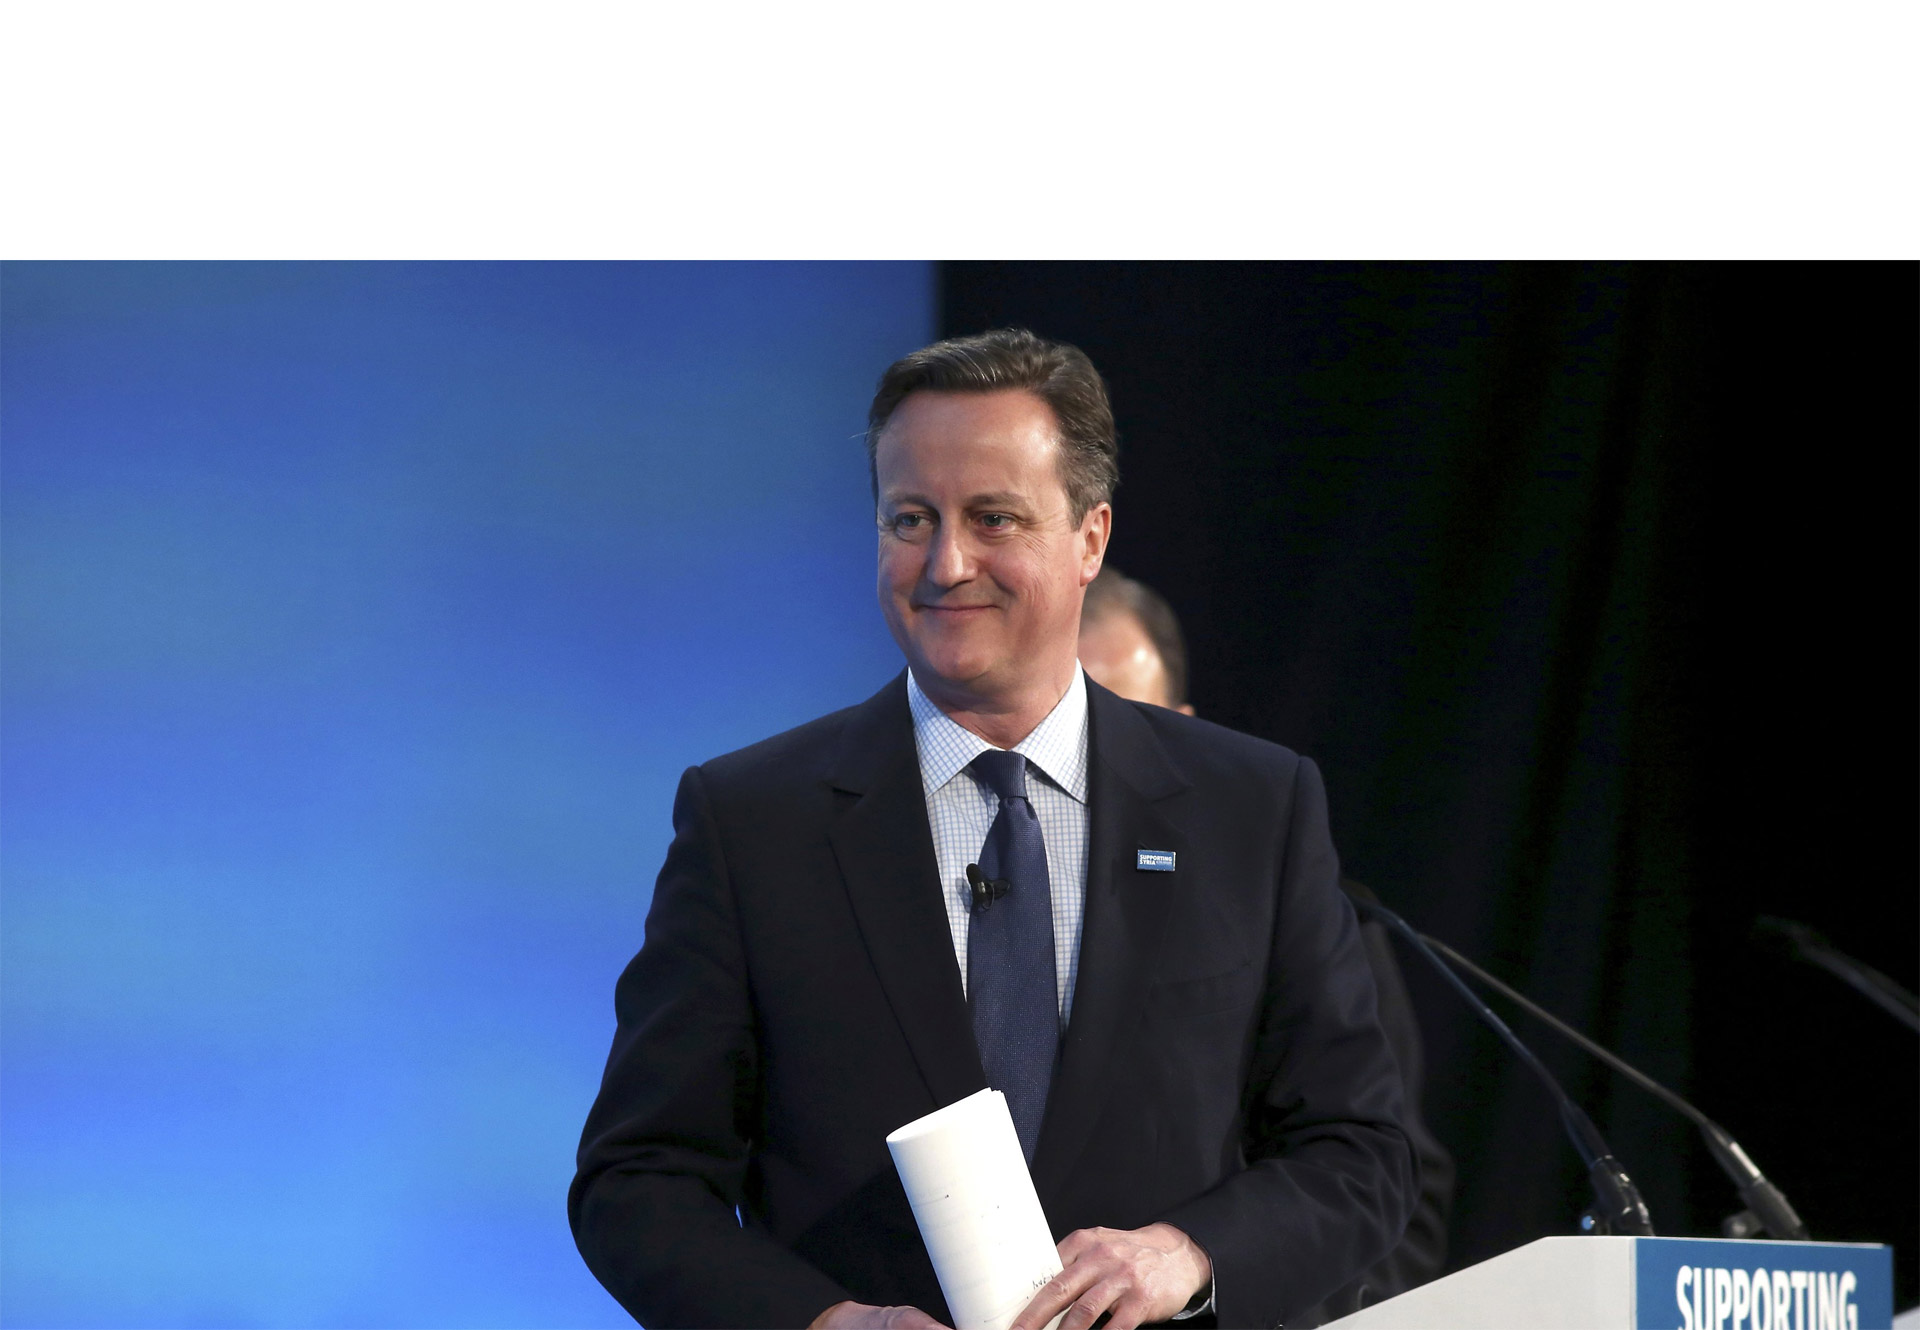 El primer ministro David Cameron fue el anfitrión de un evento de caridad para ayudar a los afectados por la guerra civil en Siria